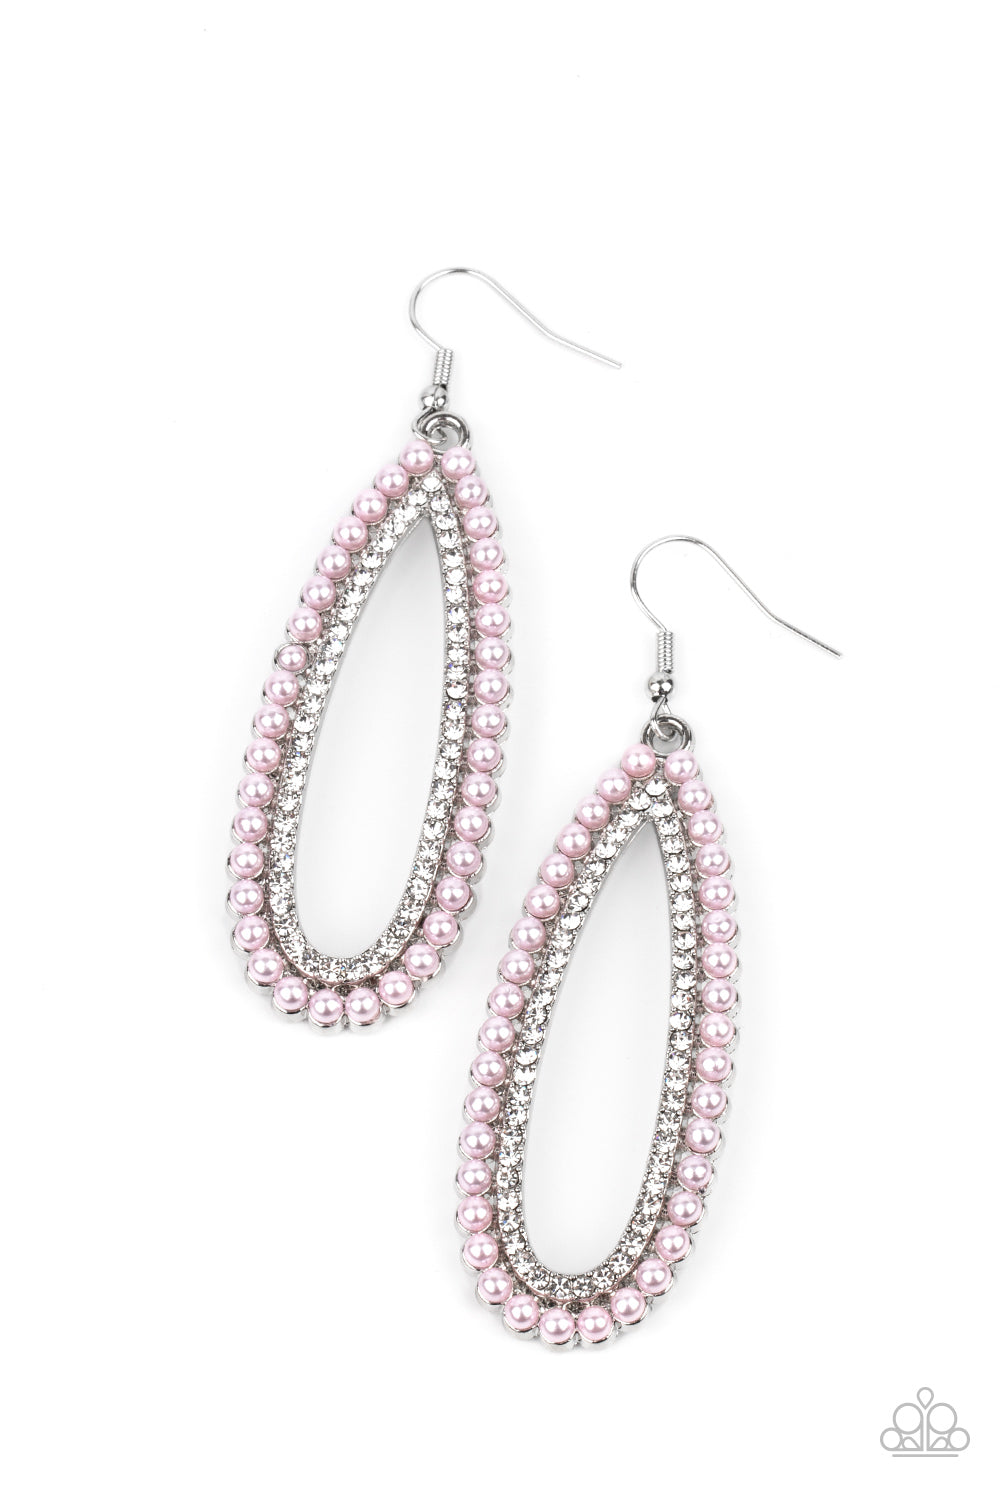 Glamorously Glowing - Pink Paparazzi Jewelry